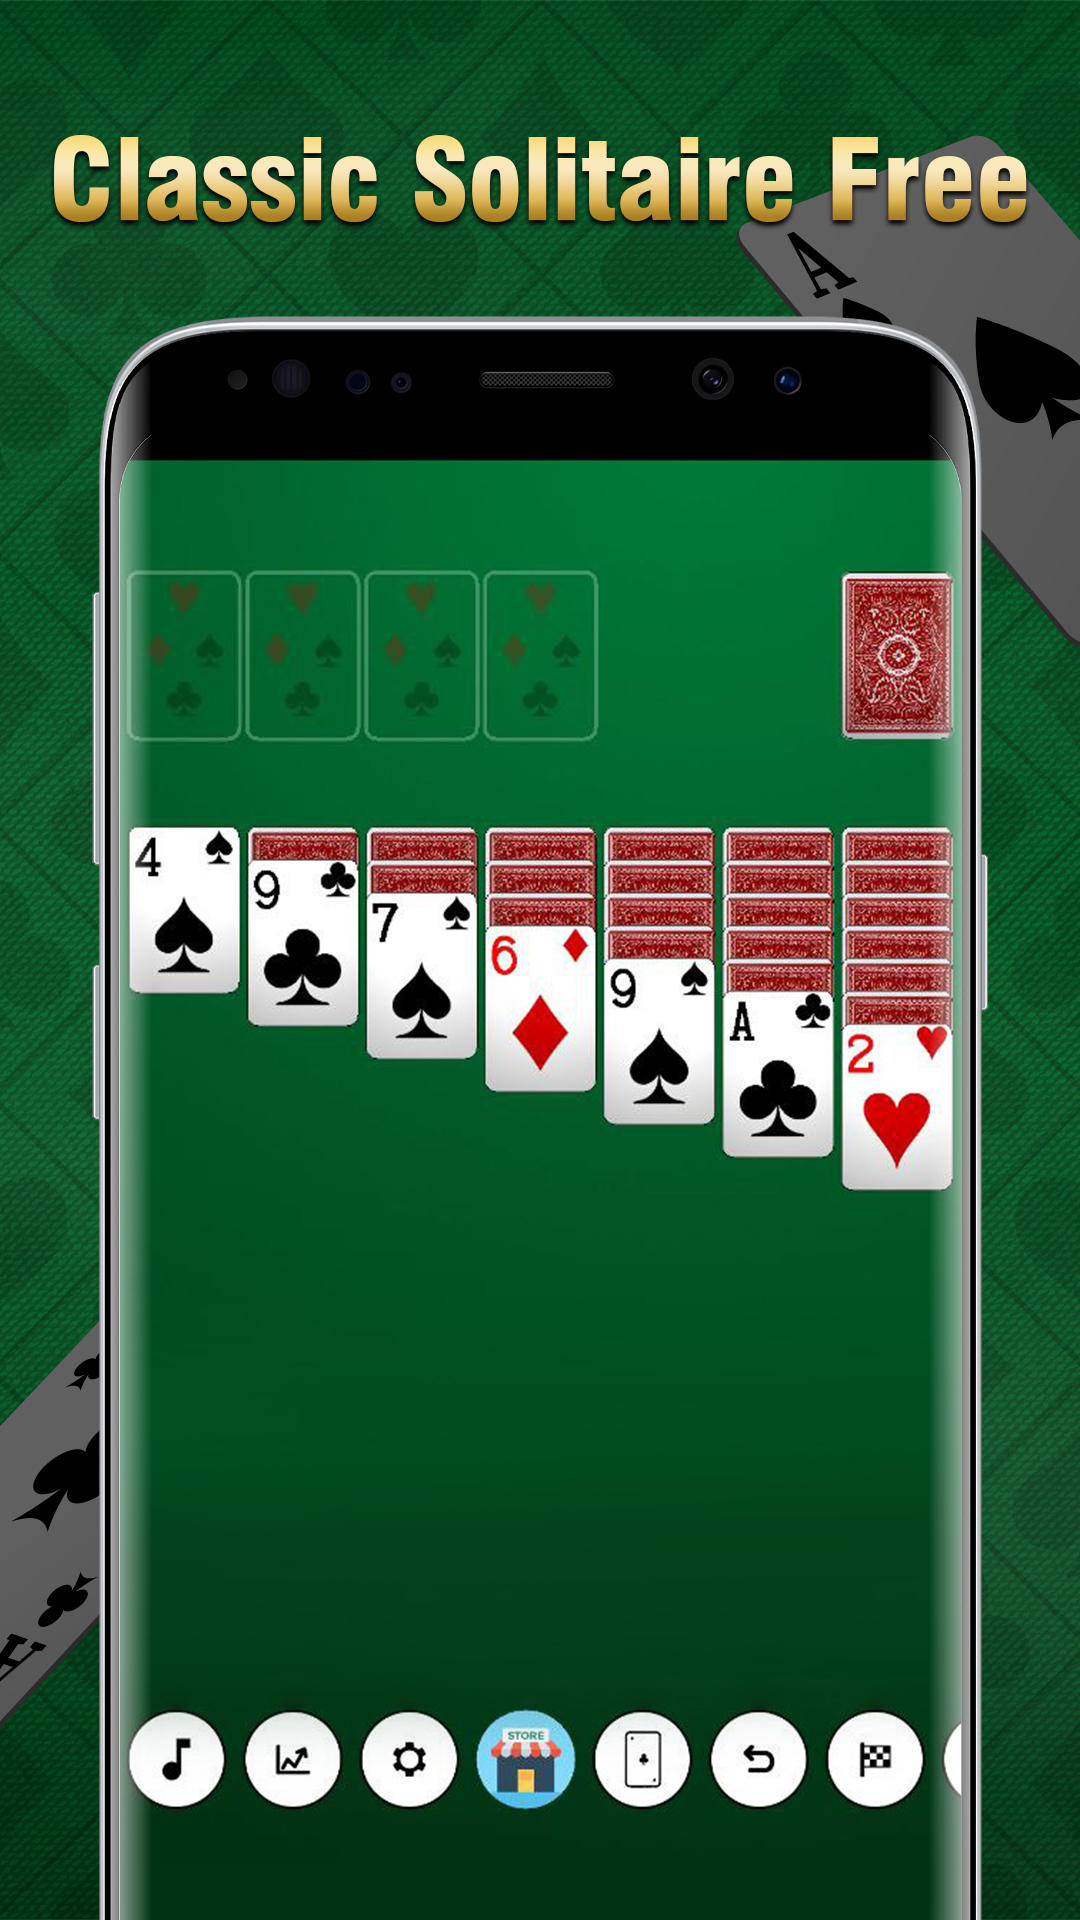 Paciência jogos de cartas online versão móvel andróide iOS apk